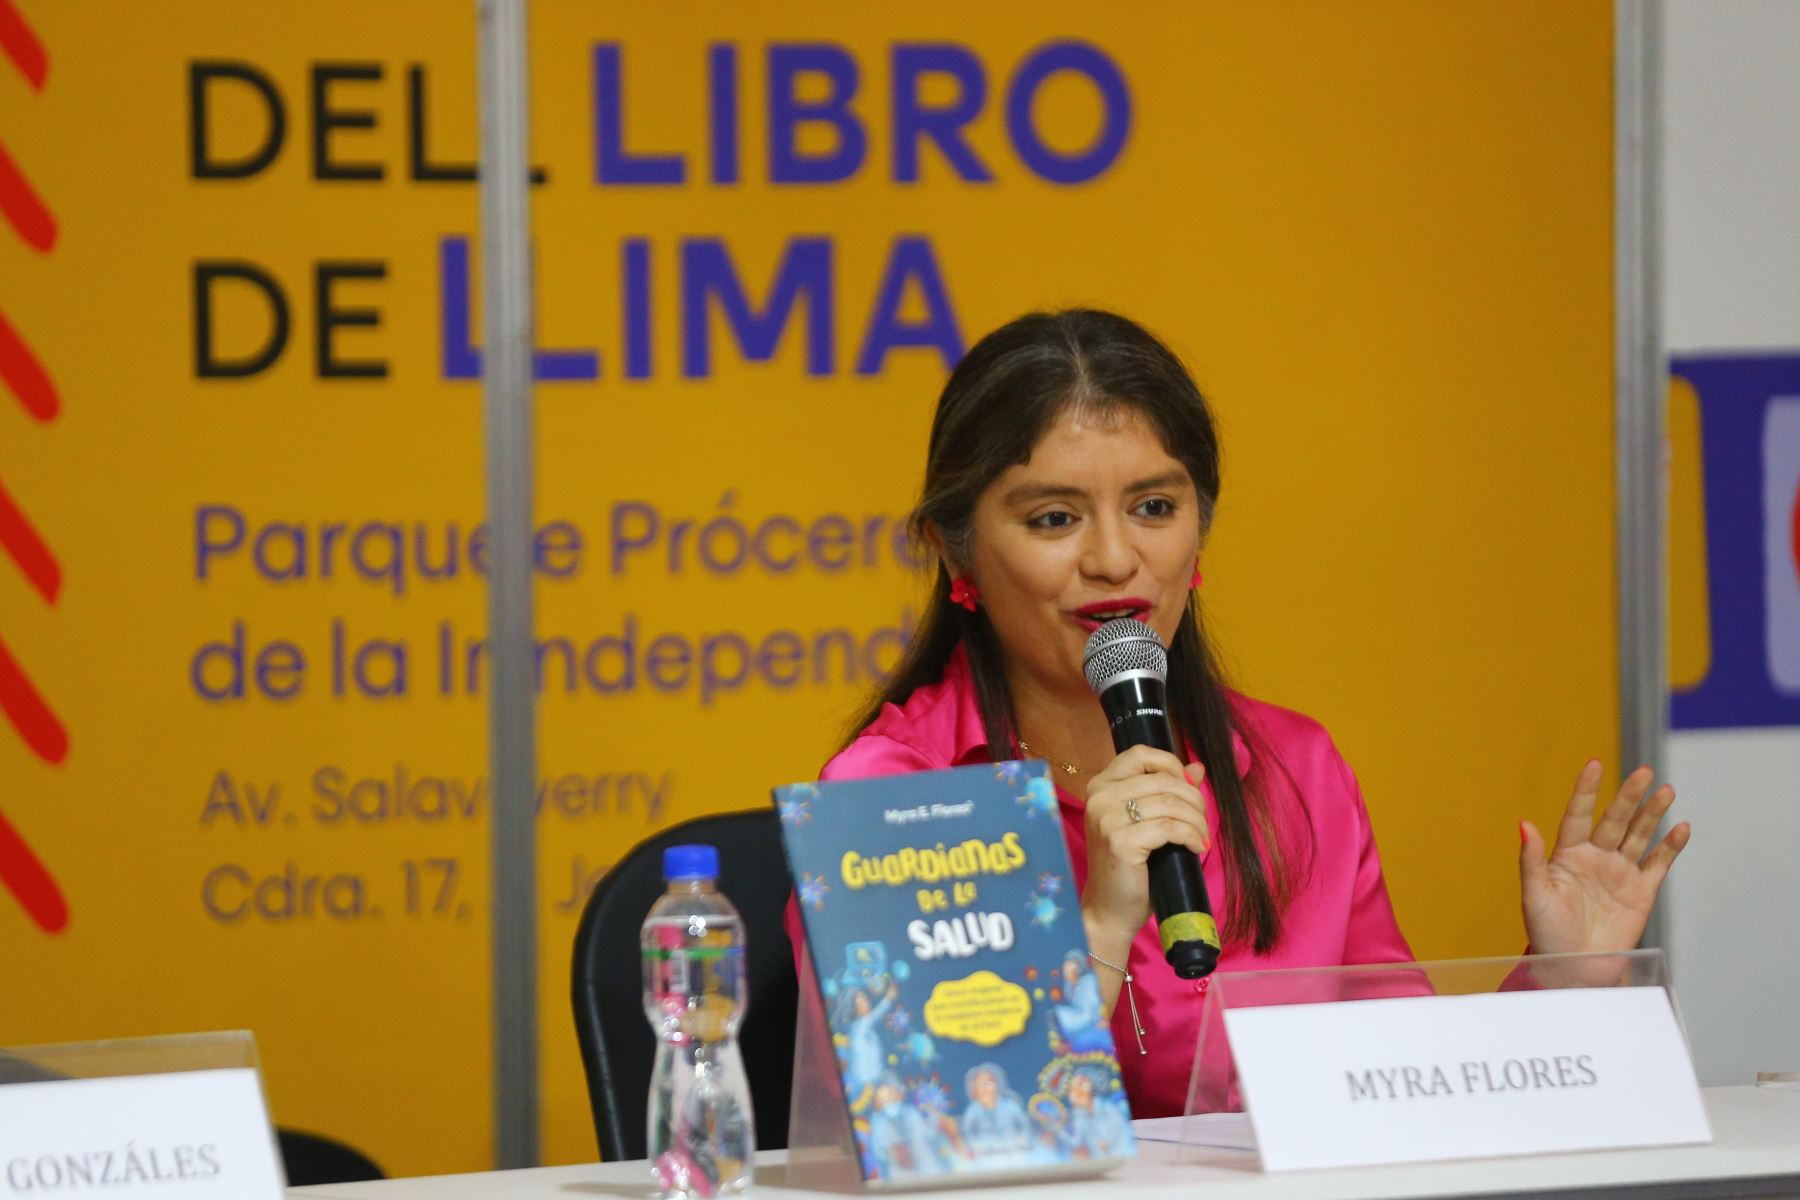 Esta publicación, bajo el sello del Fondo Editorial Editora Perú, viene promoviendo la participación femenina en el campo científico. Foto: ANDINA/Eddy Ramos